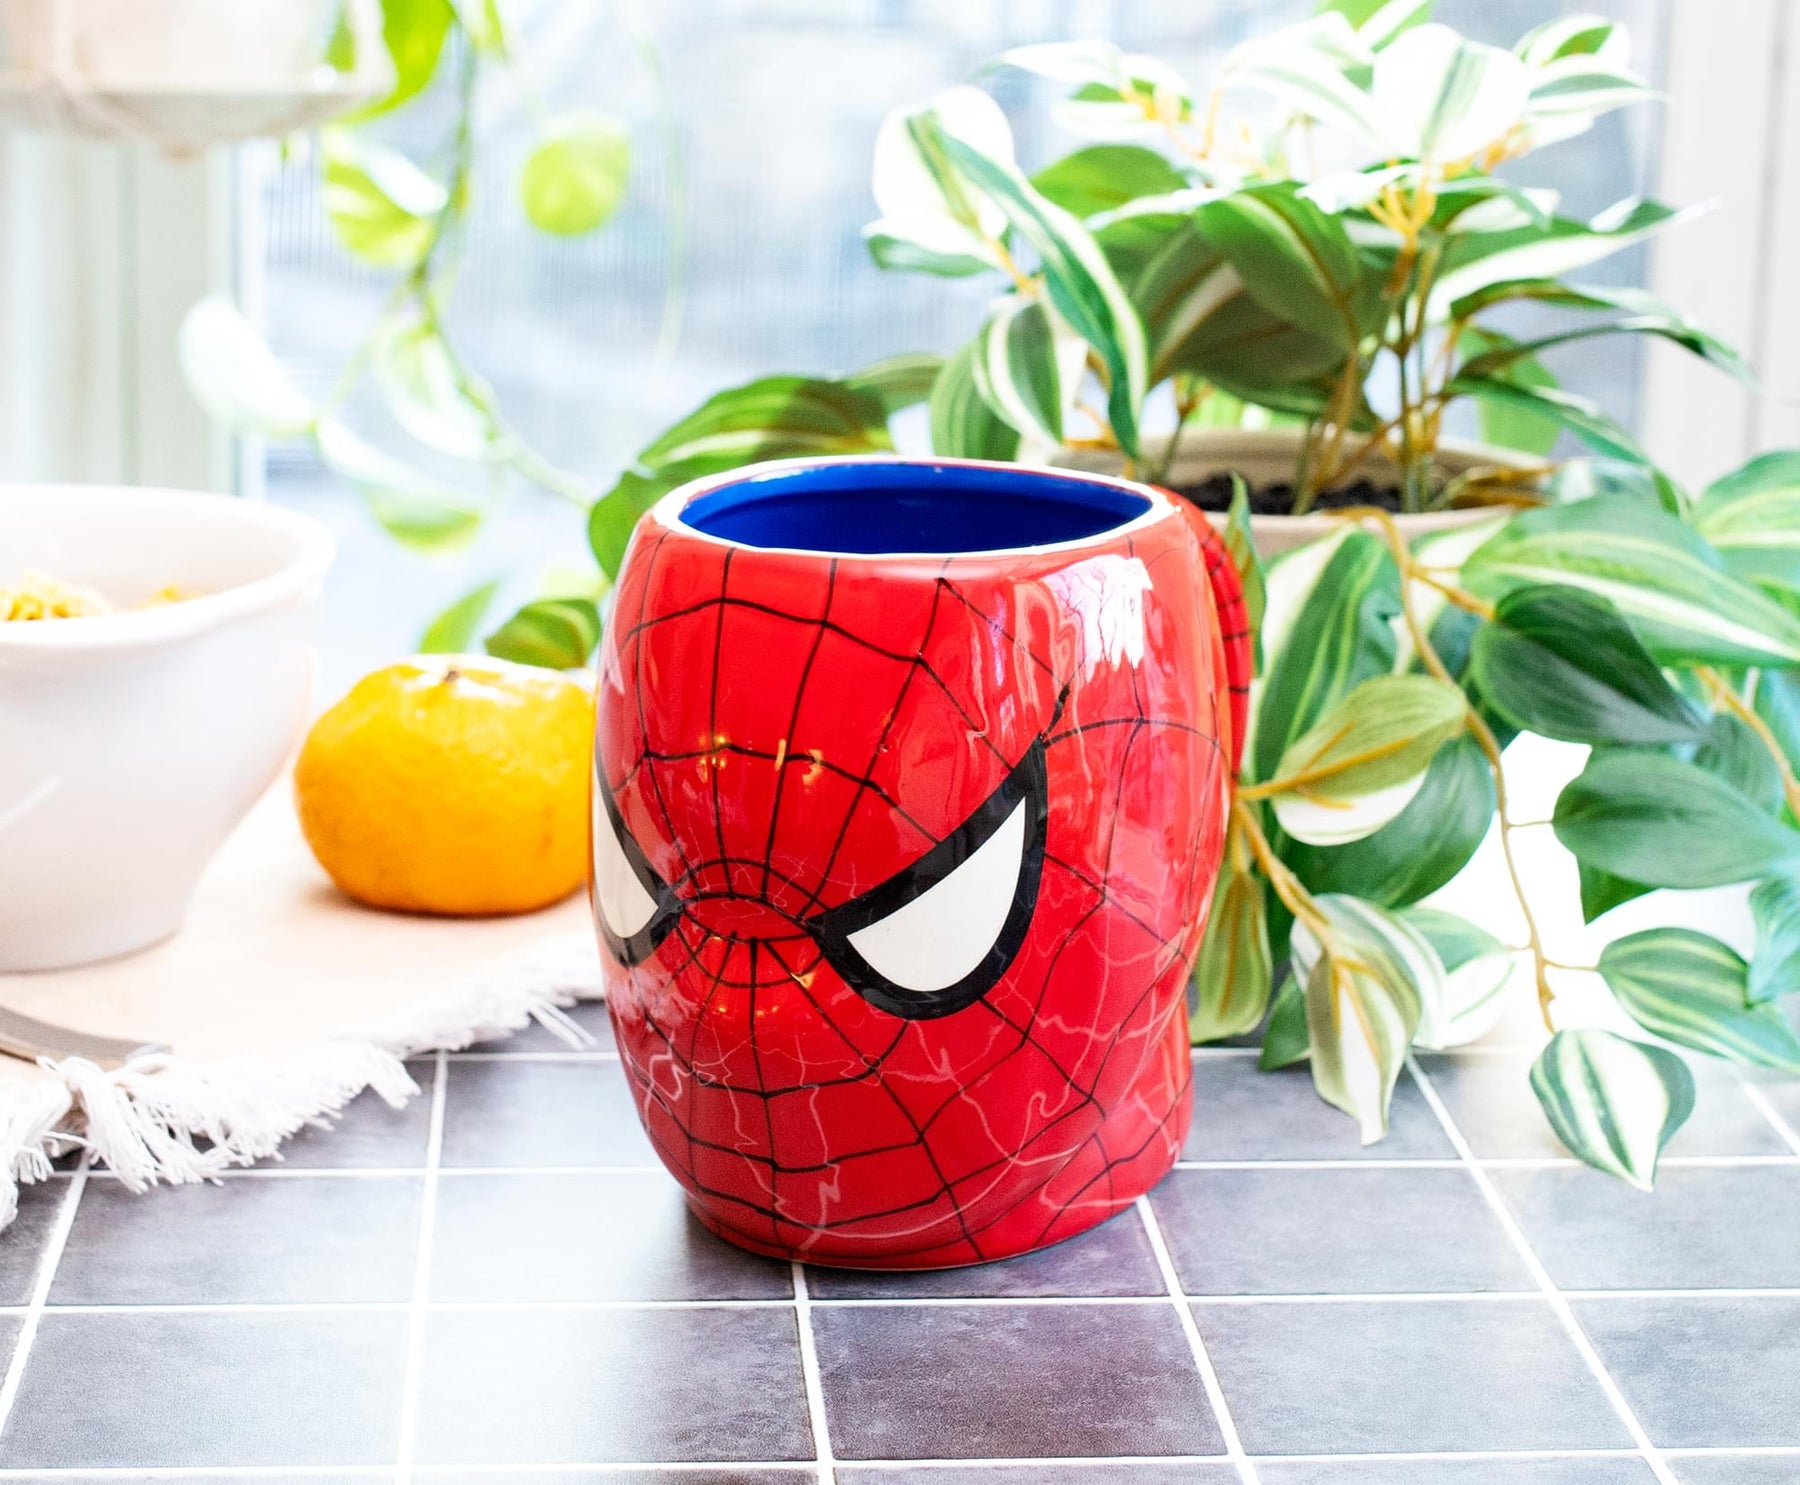 Spider-Man New York Doodles Stackable 13oz Ceramic Mug